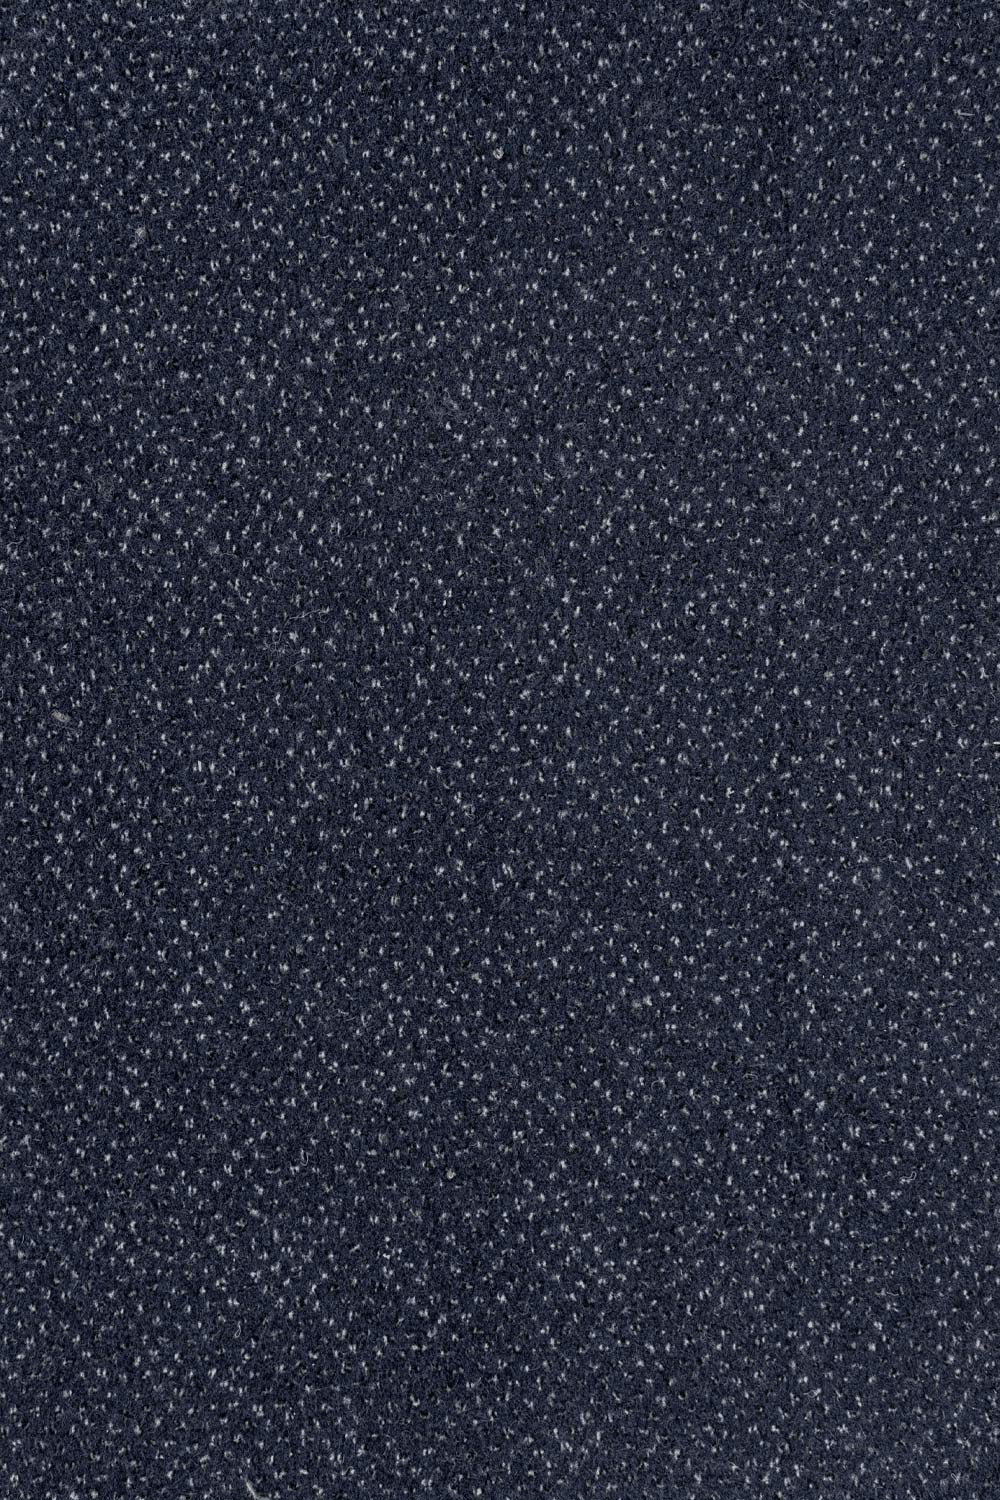 Objektový koberec SATURNUS 83 400 cm